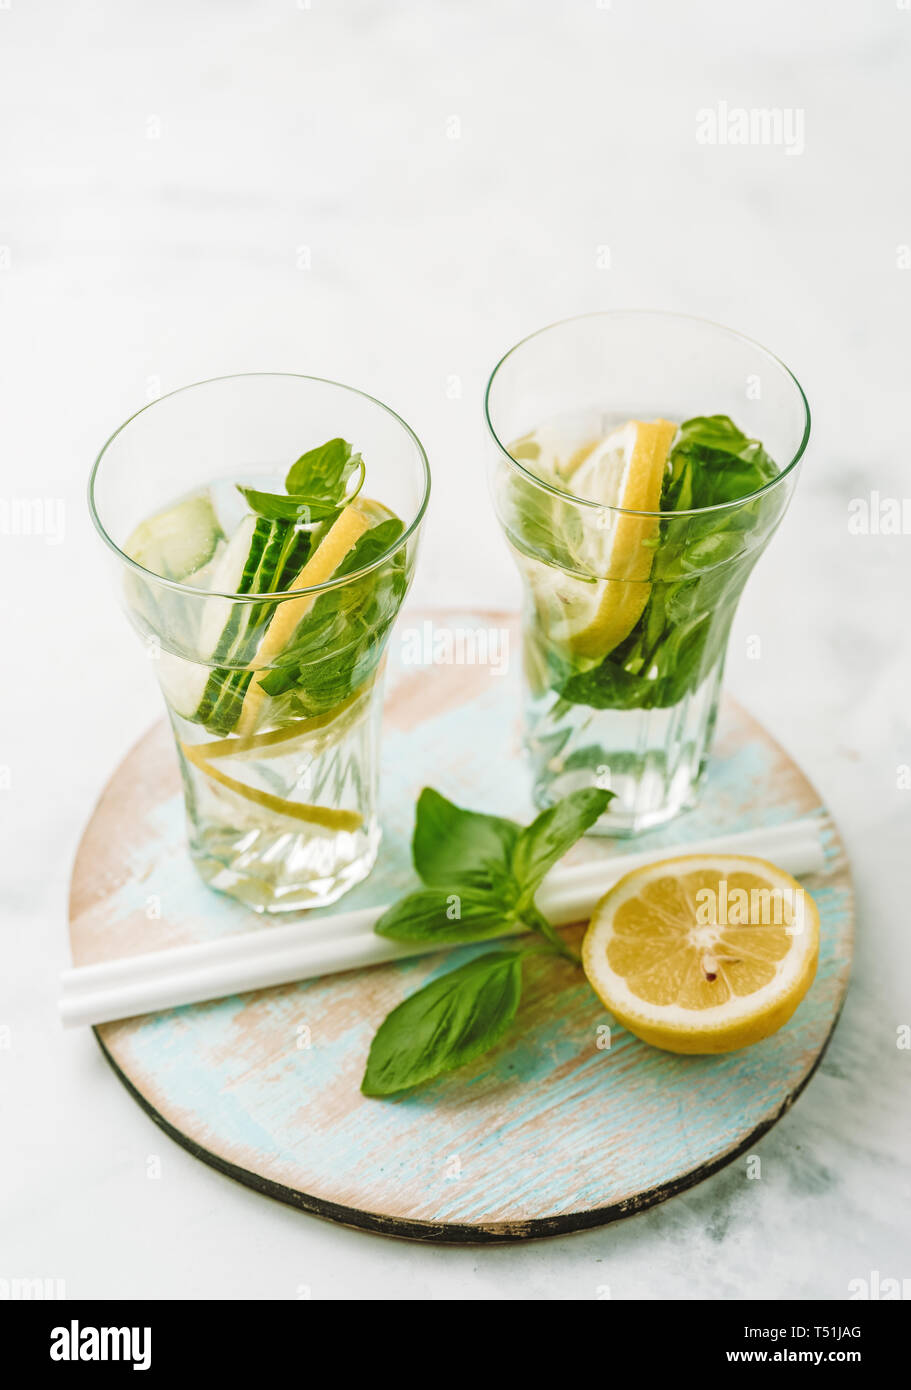 Acqua infusa in due bicchieri con limone, cetrioli e basilico Foto Stock